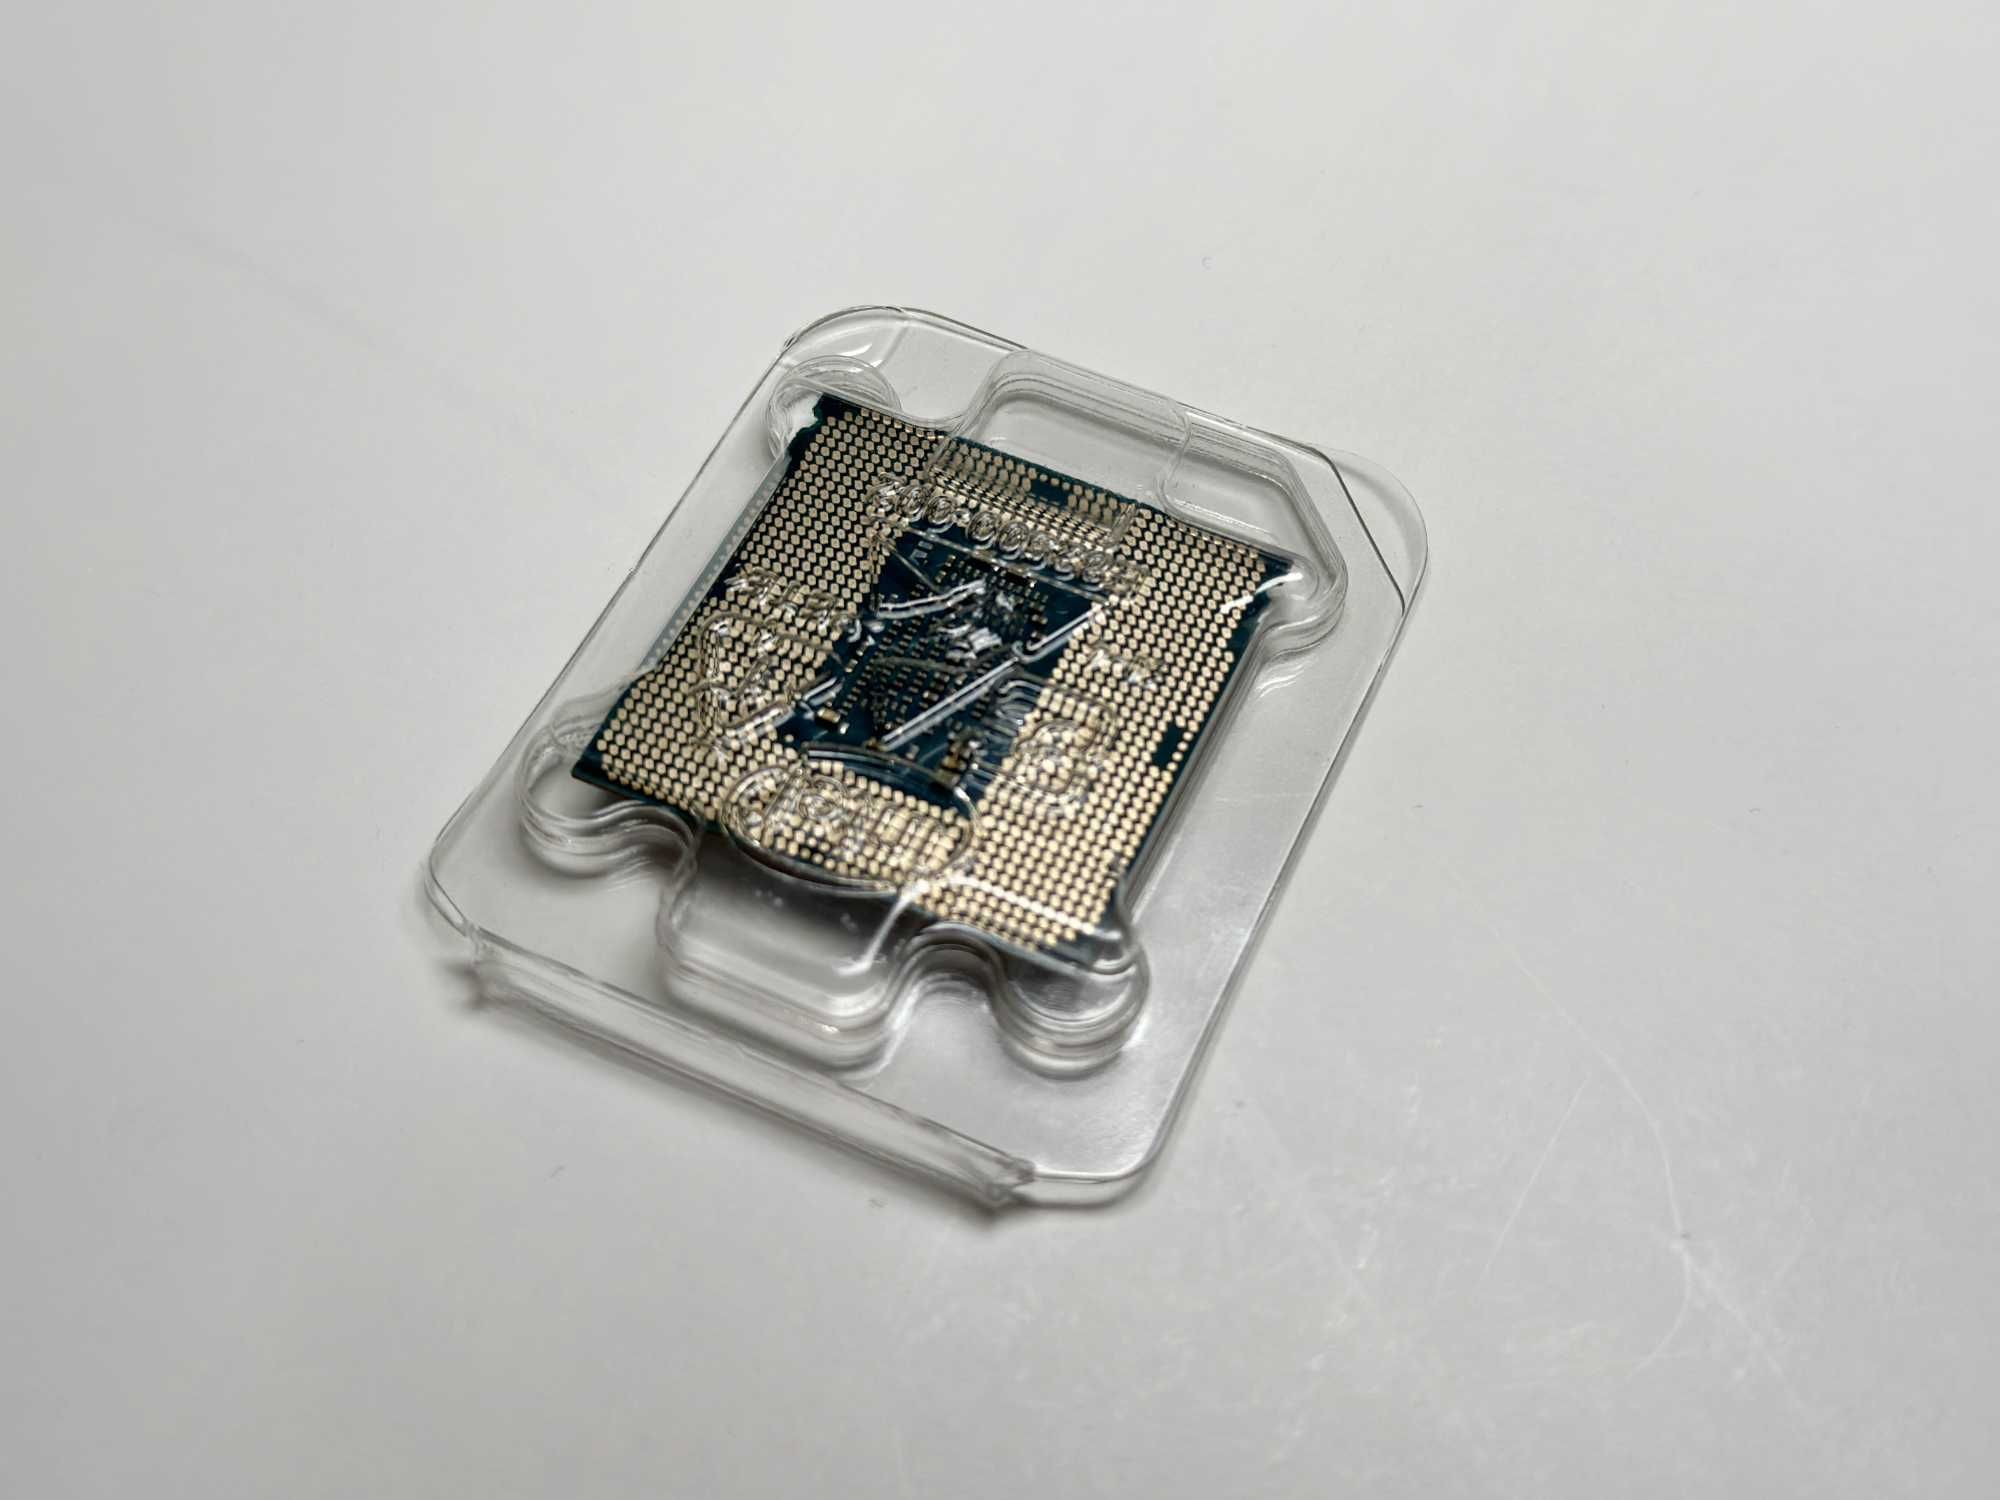 Procesor intel i7-7700k 4,2GHz